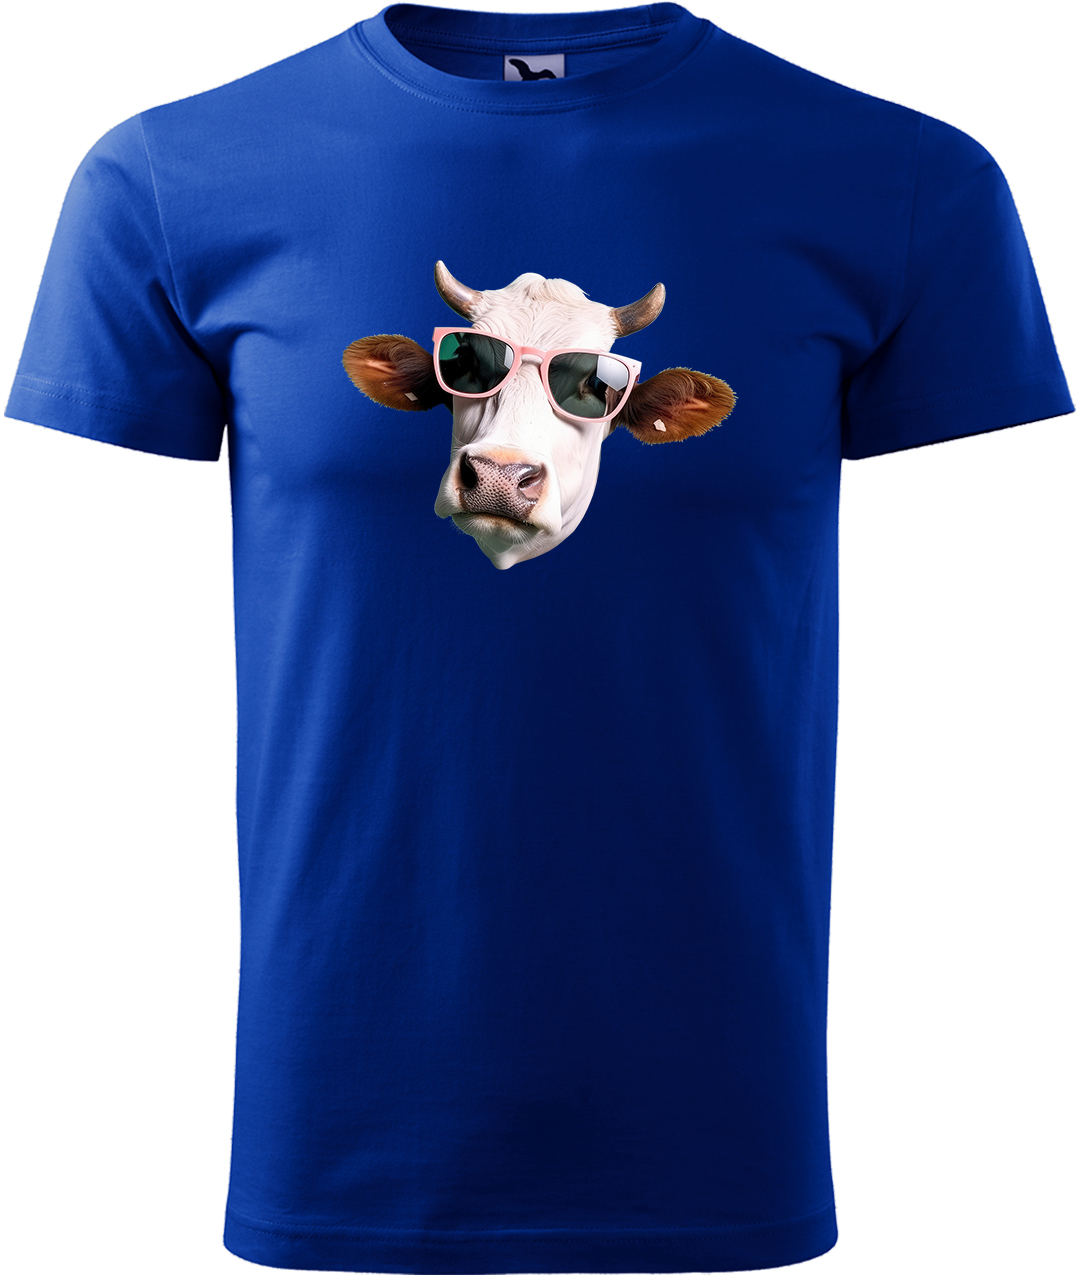 Pánské tričko s krávou - Kráva v brýlích Velikost: M, Barva: Královská modrá (05), Střih: pánský